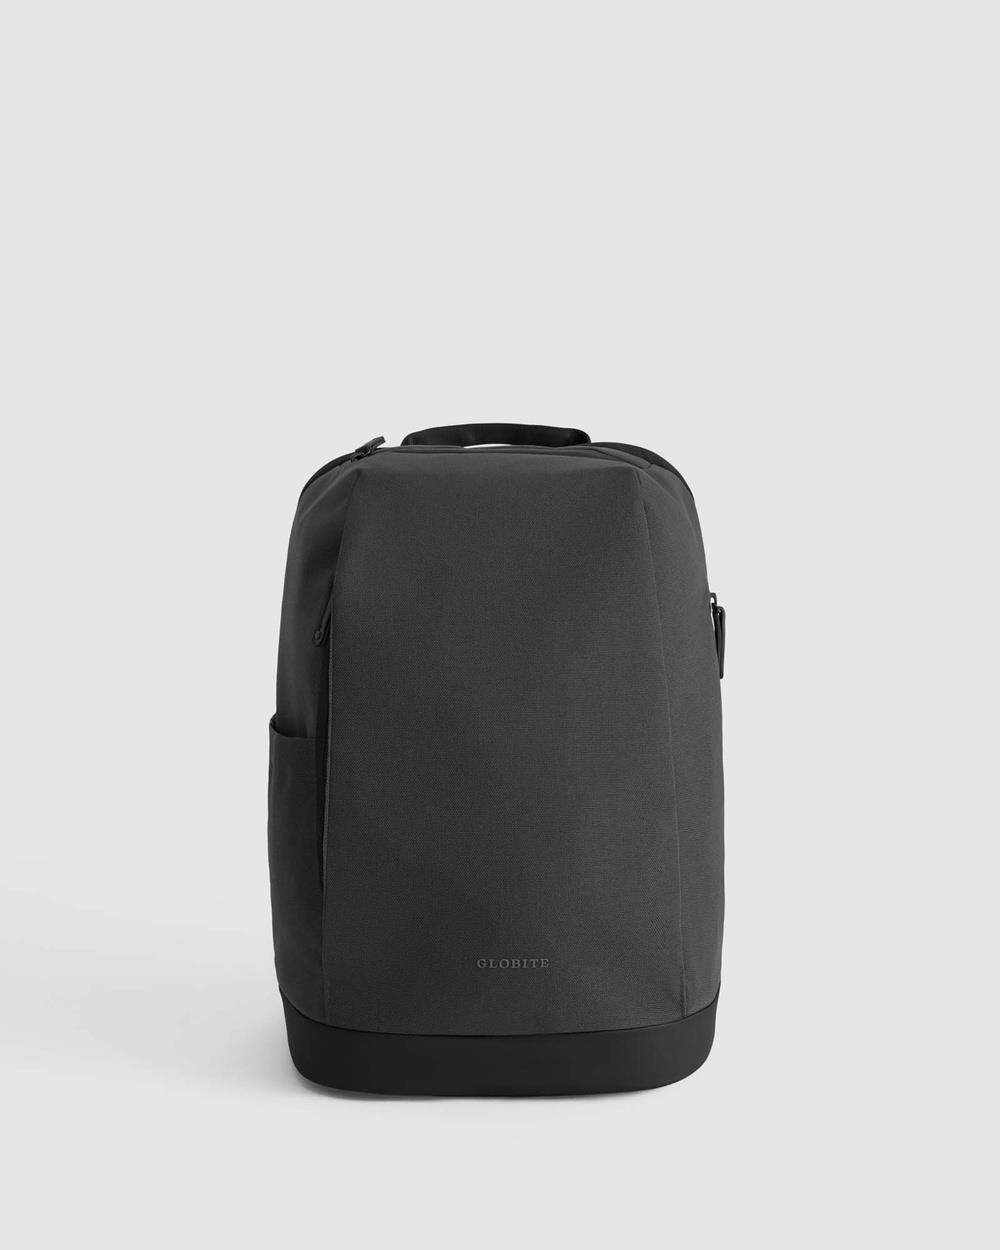 Globite - Commuter City Backpack - Backpacks (Black) Commuter City Backpack